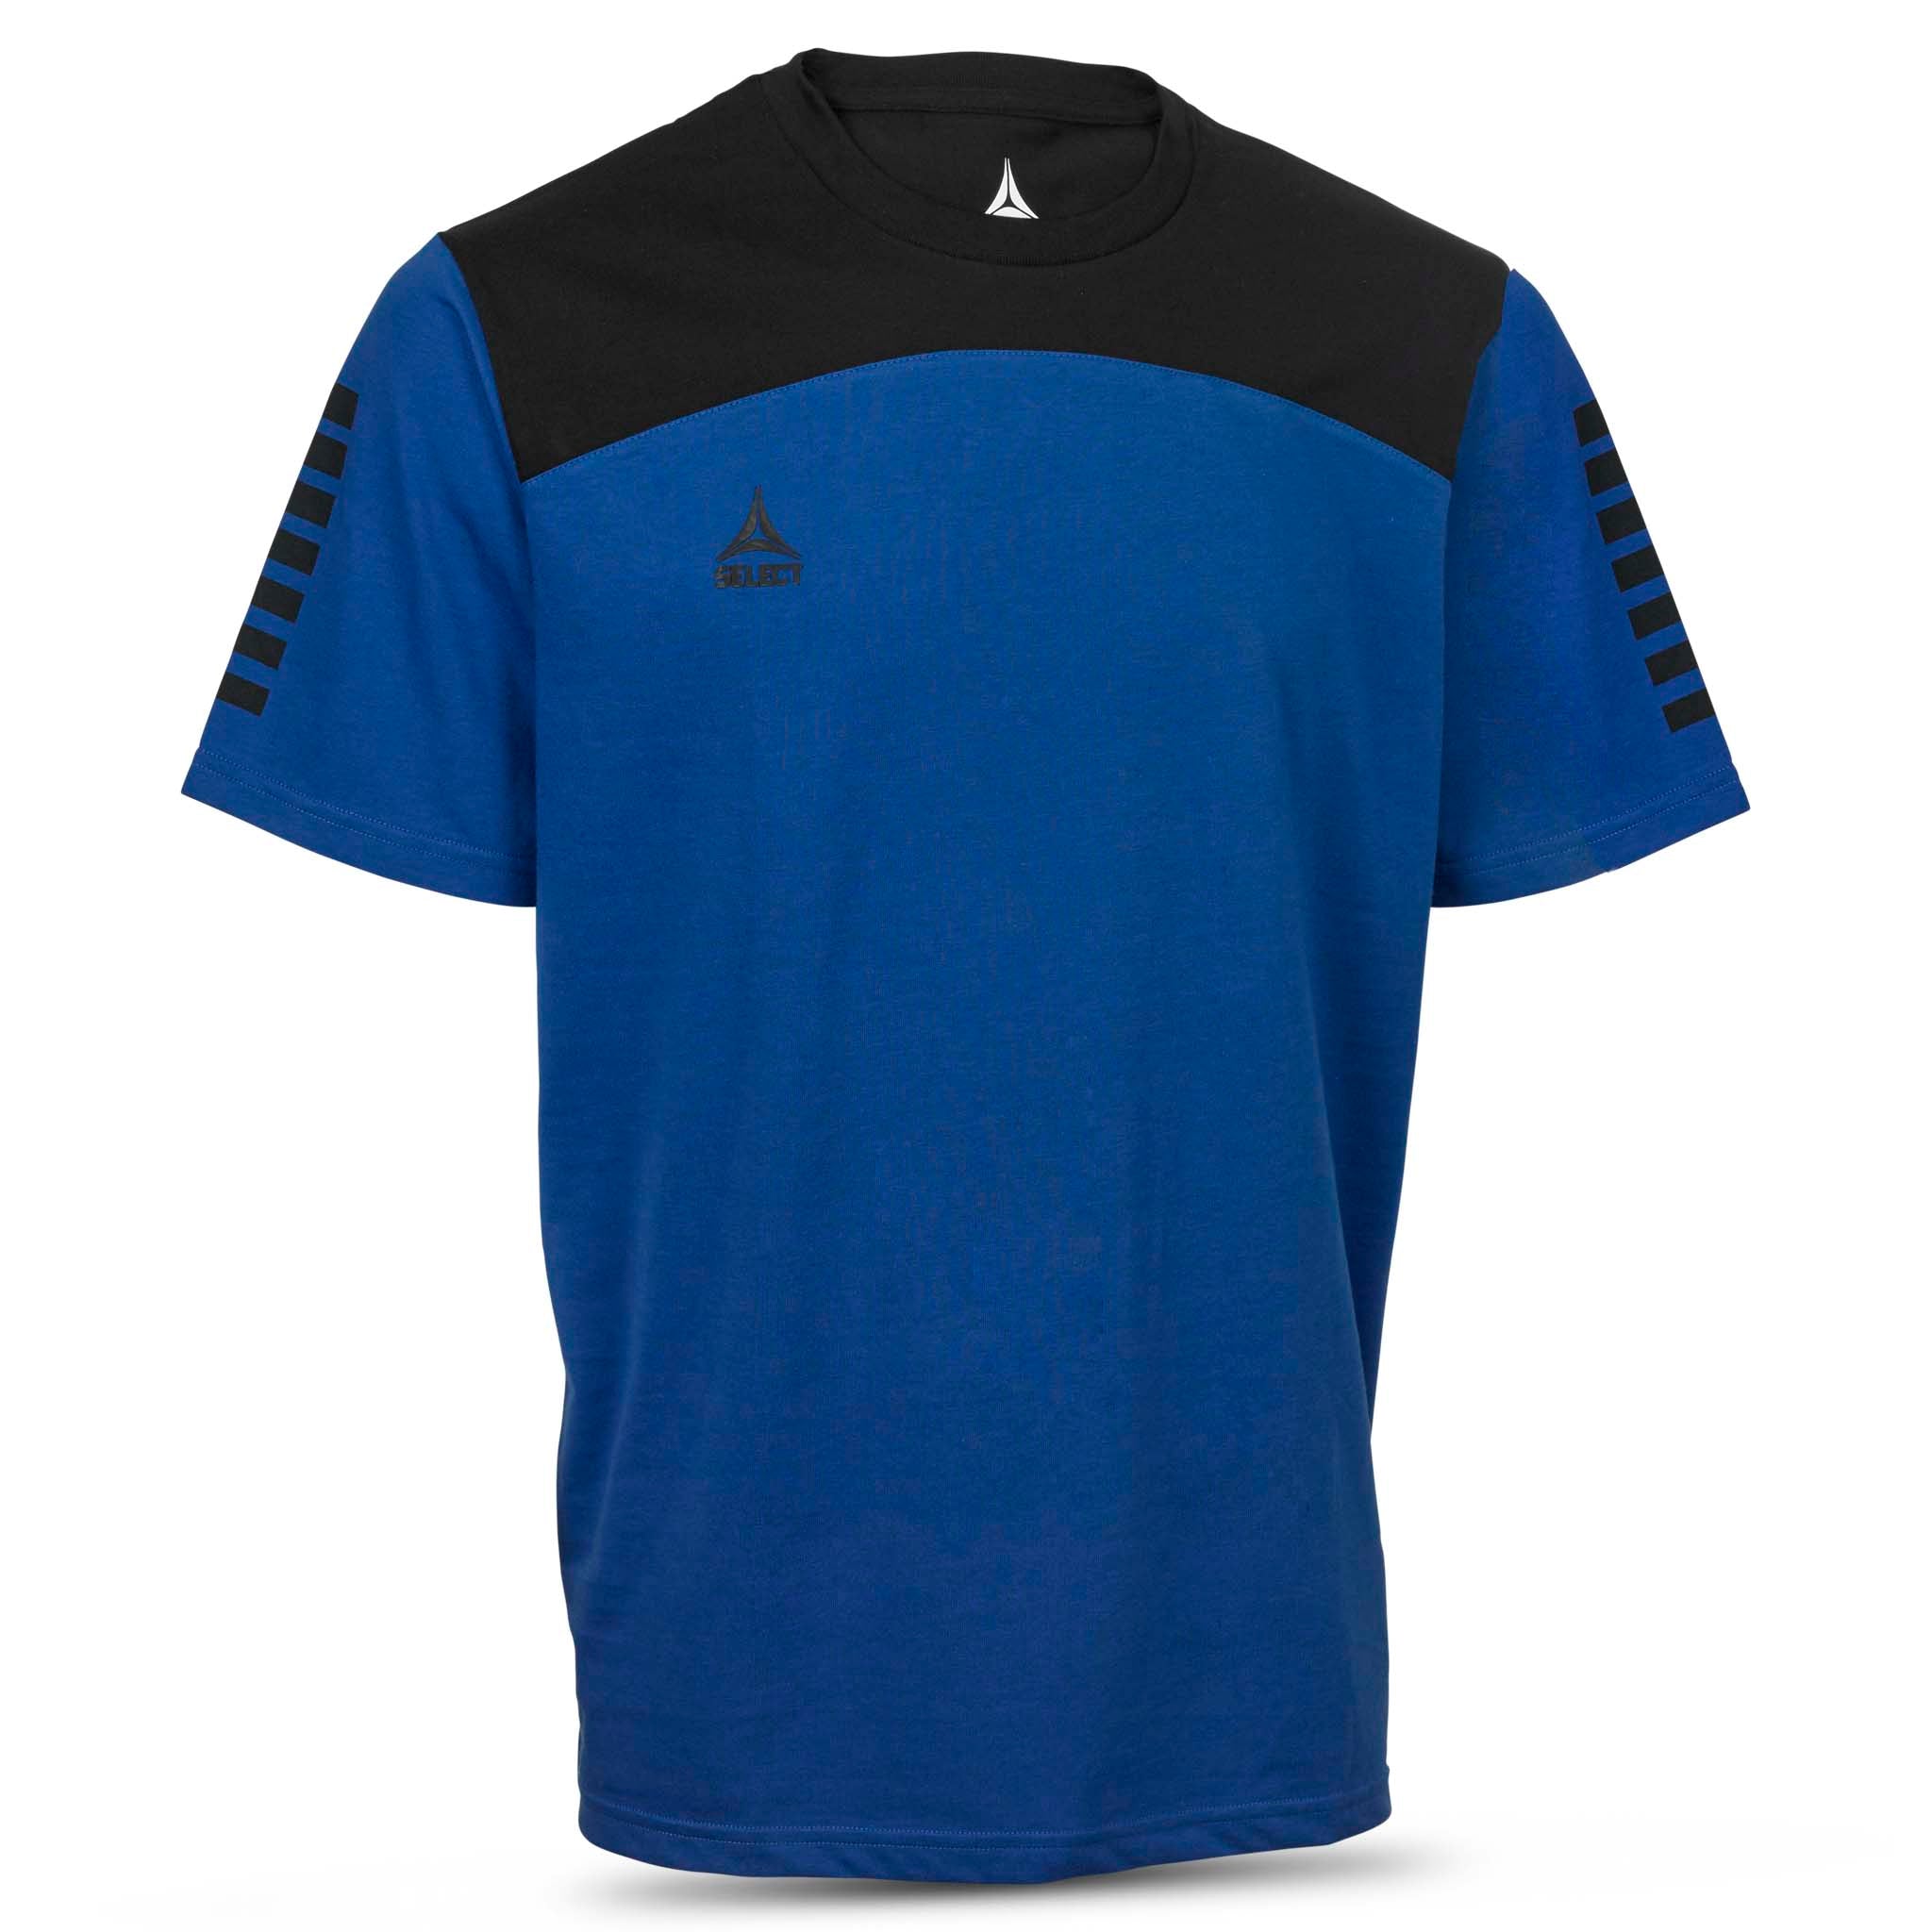 Oxford T-Shirt #farve_blå/sort